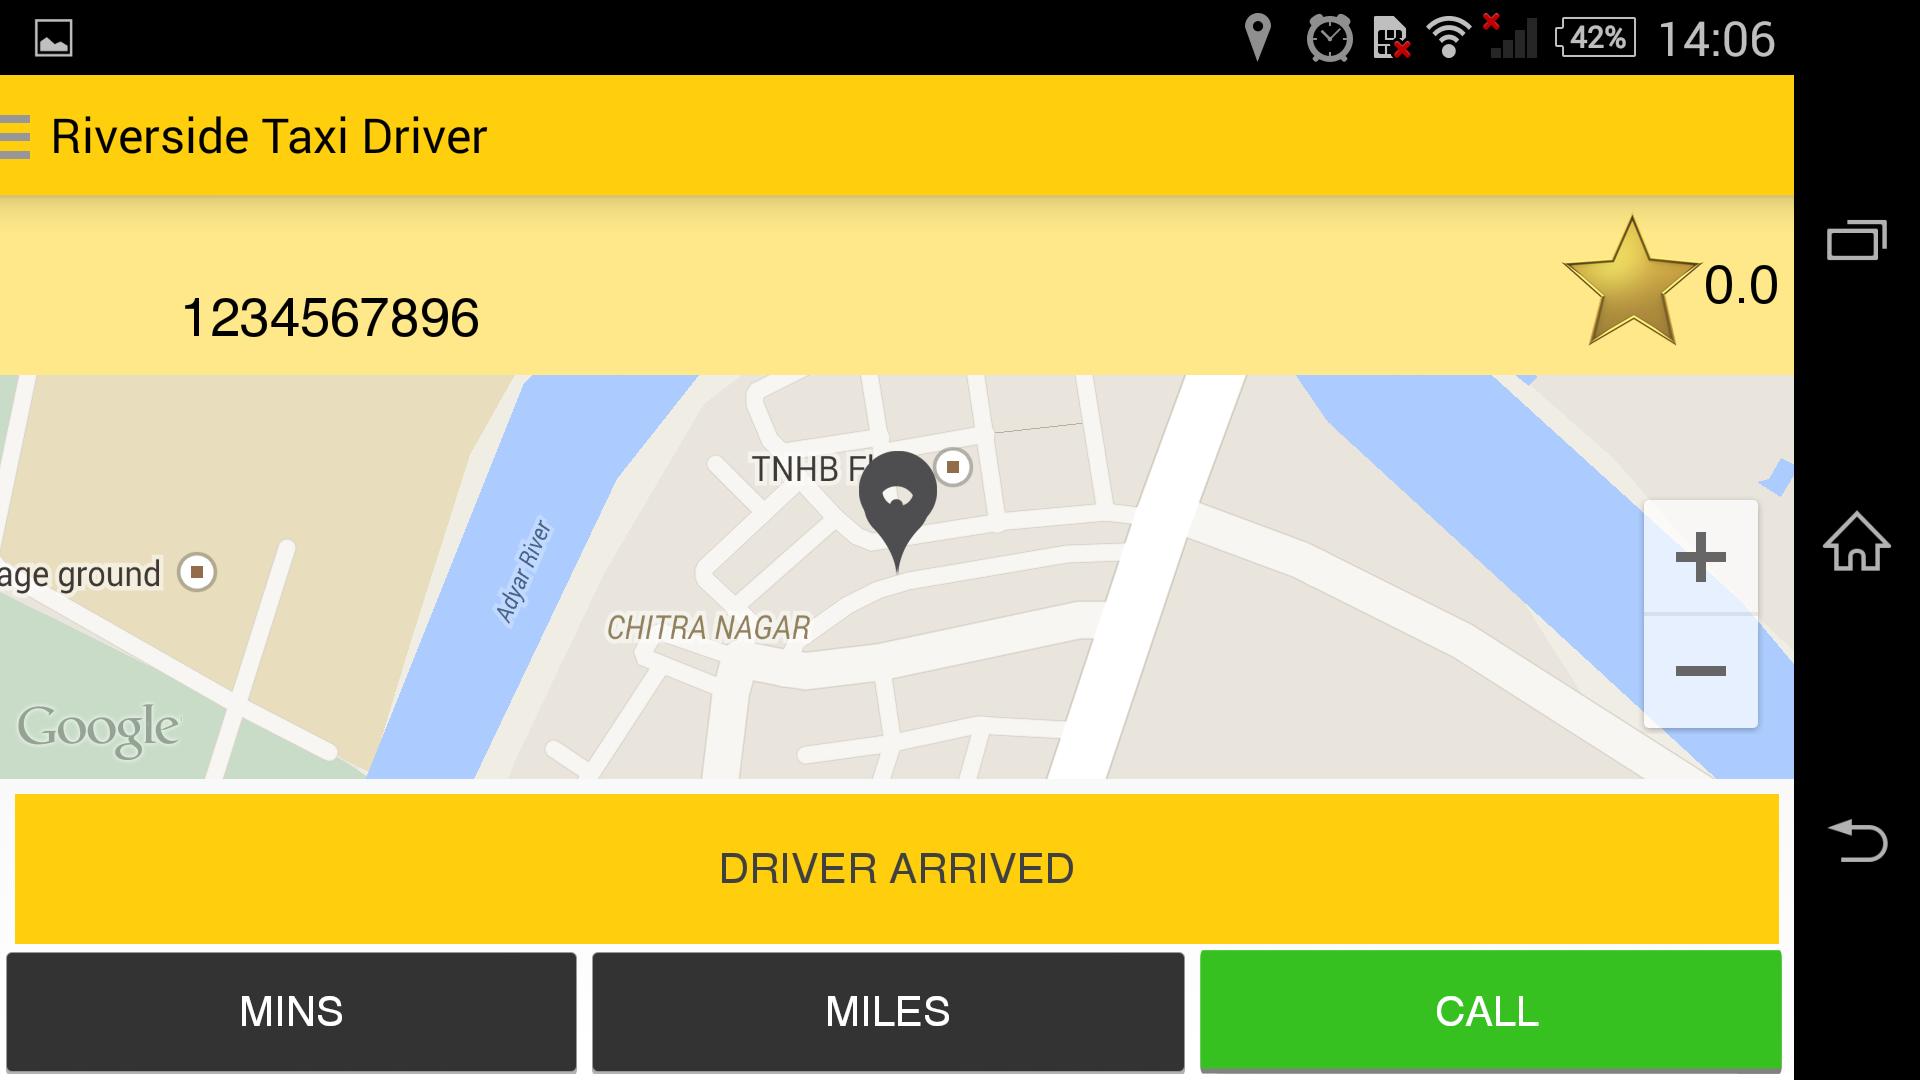 Такси драйвер rfhnf. Как в приложении такси драйвер менять парки. Такси драйвер в каком городе находится. Не показывает карту города такси драйвер. Такси драйвер авторизация